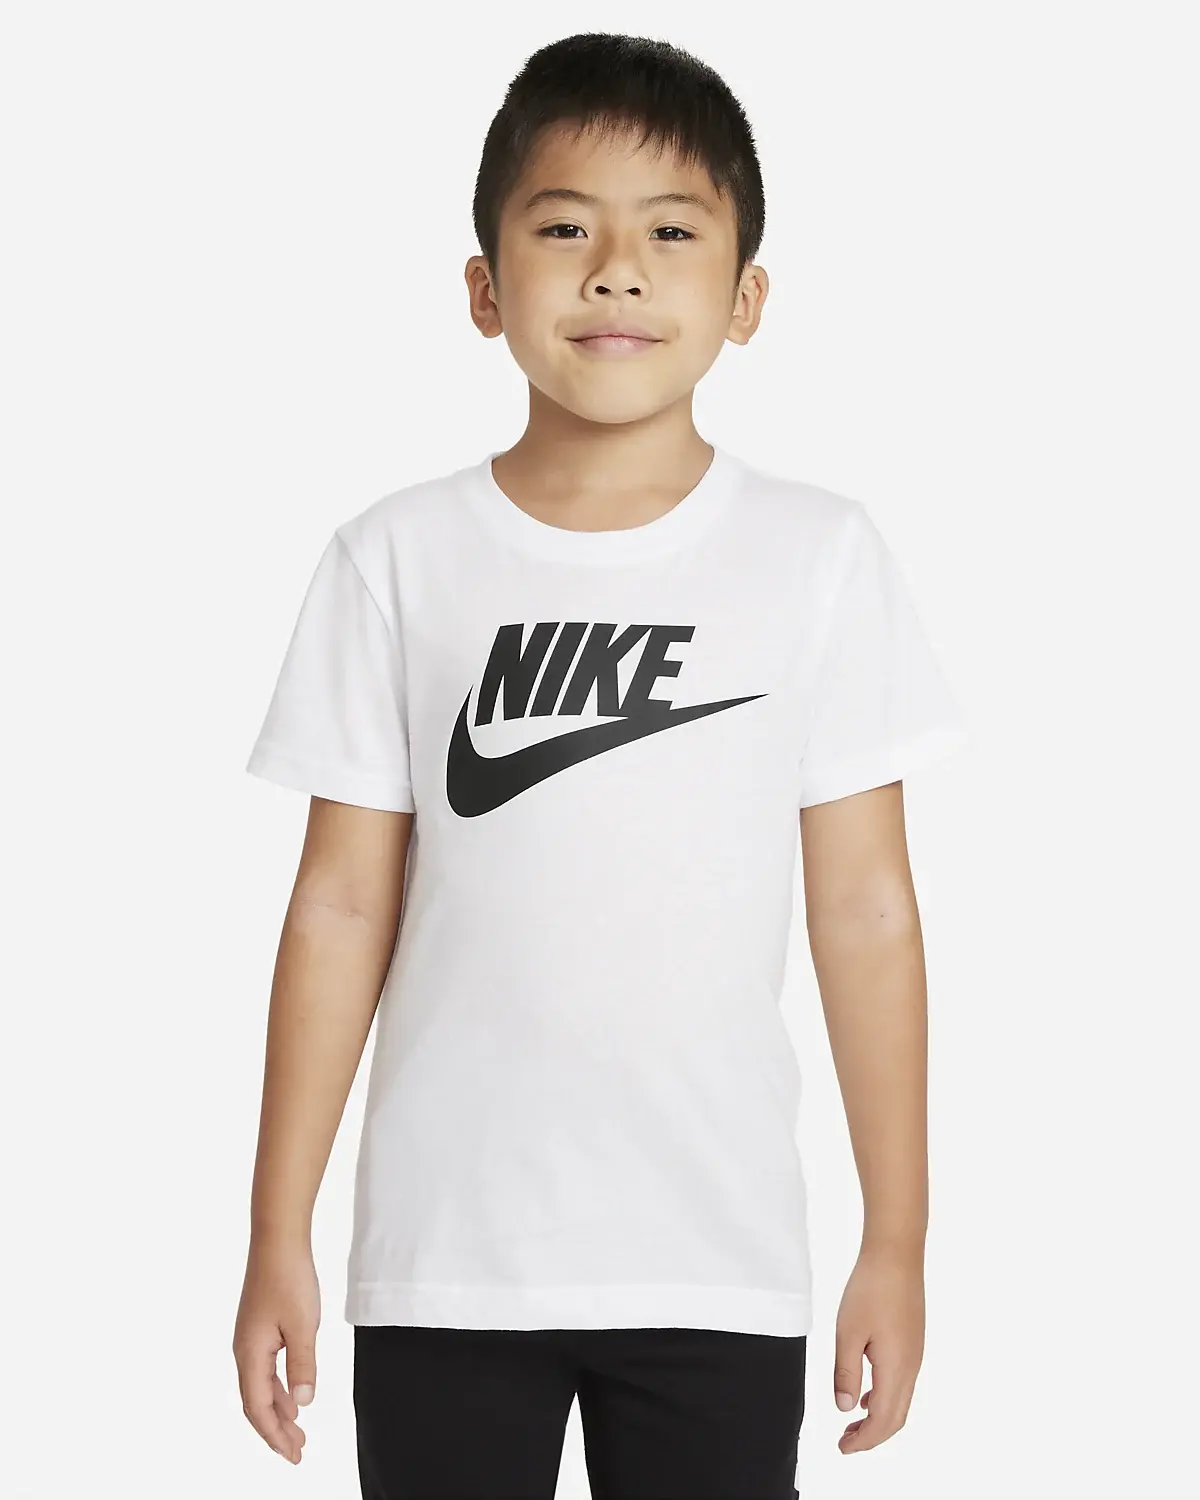 Nike TShirts. 1